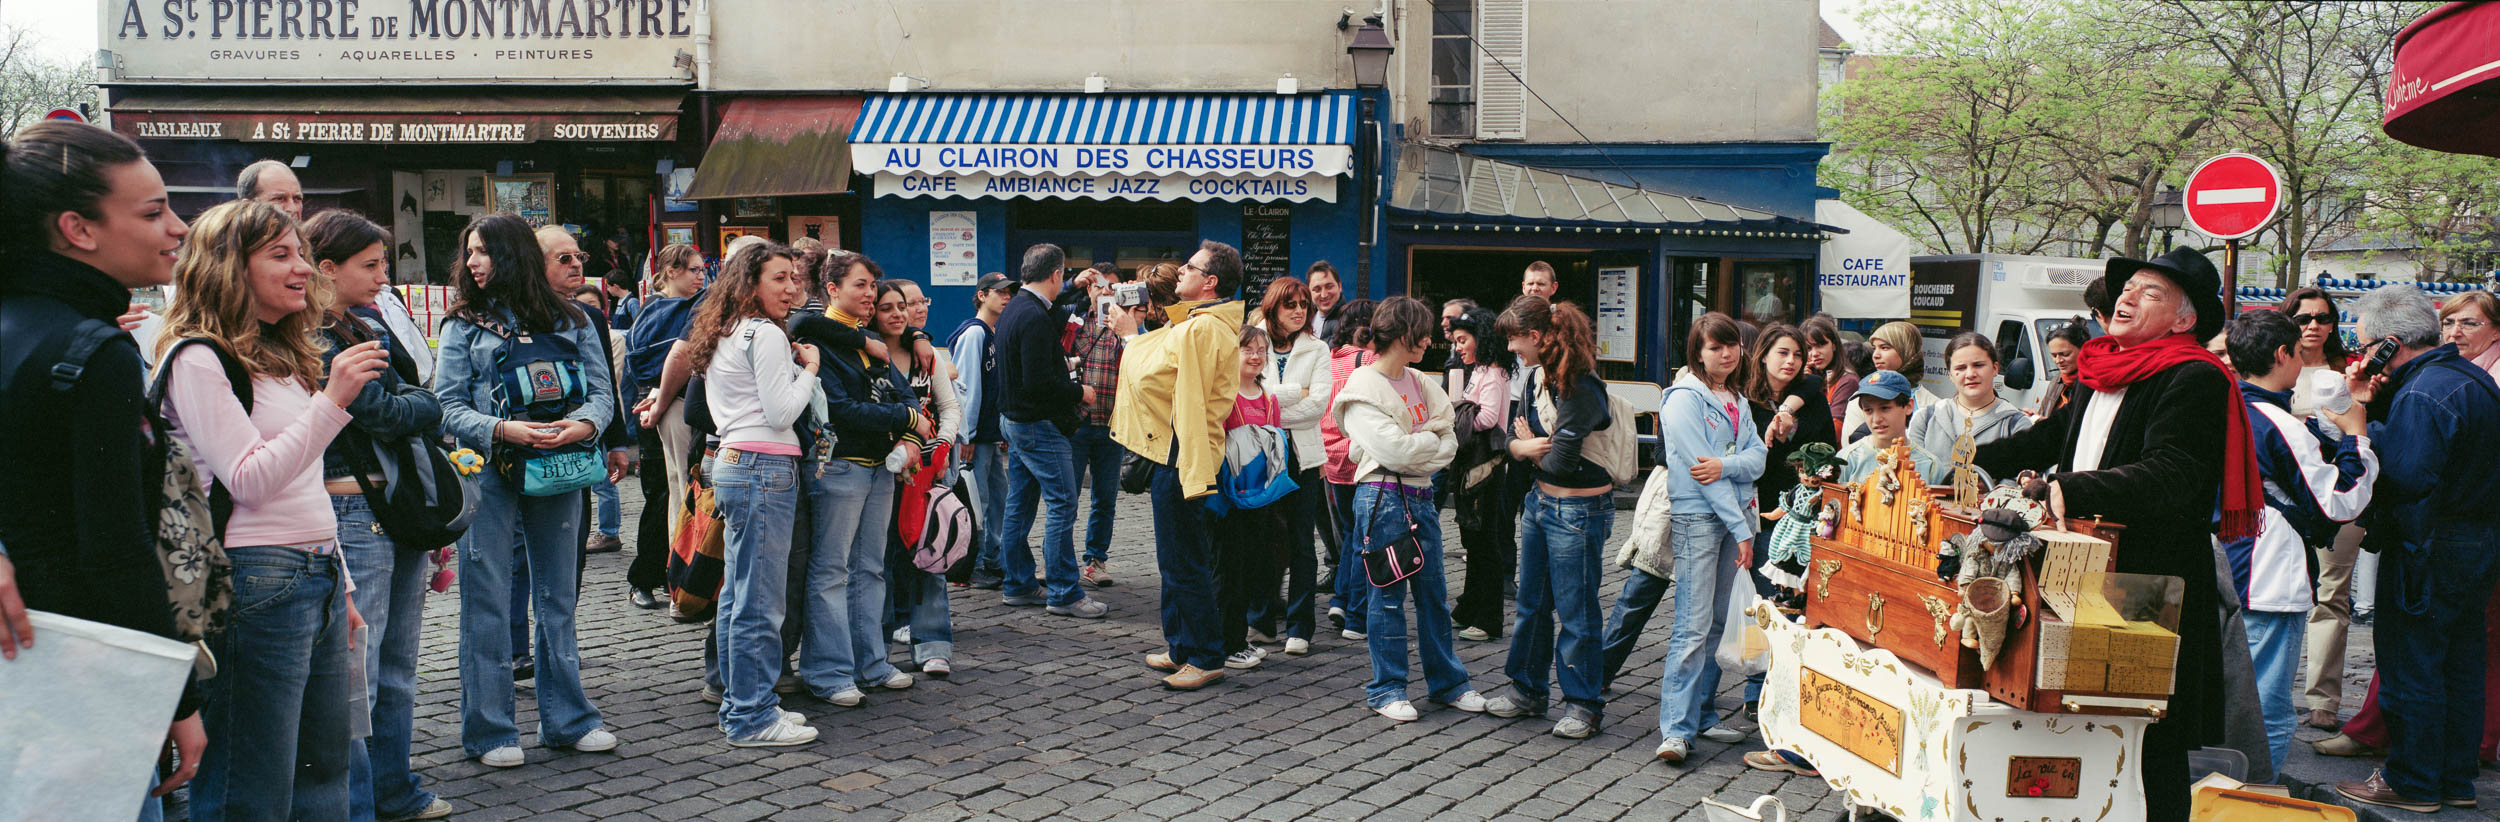 Street scene Montmartre, Paris